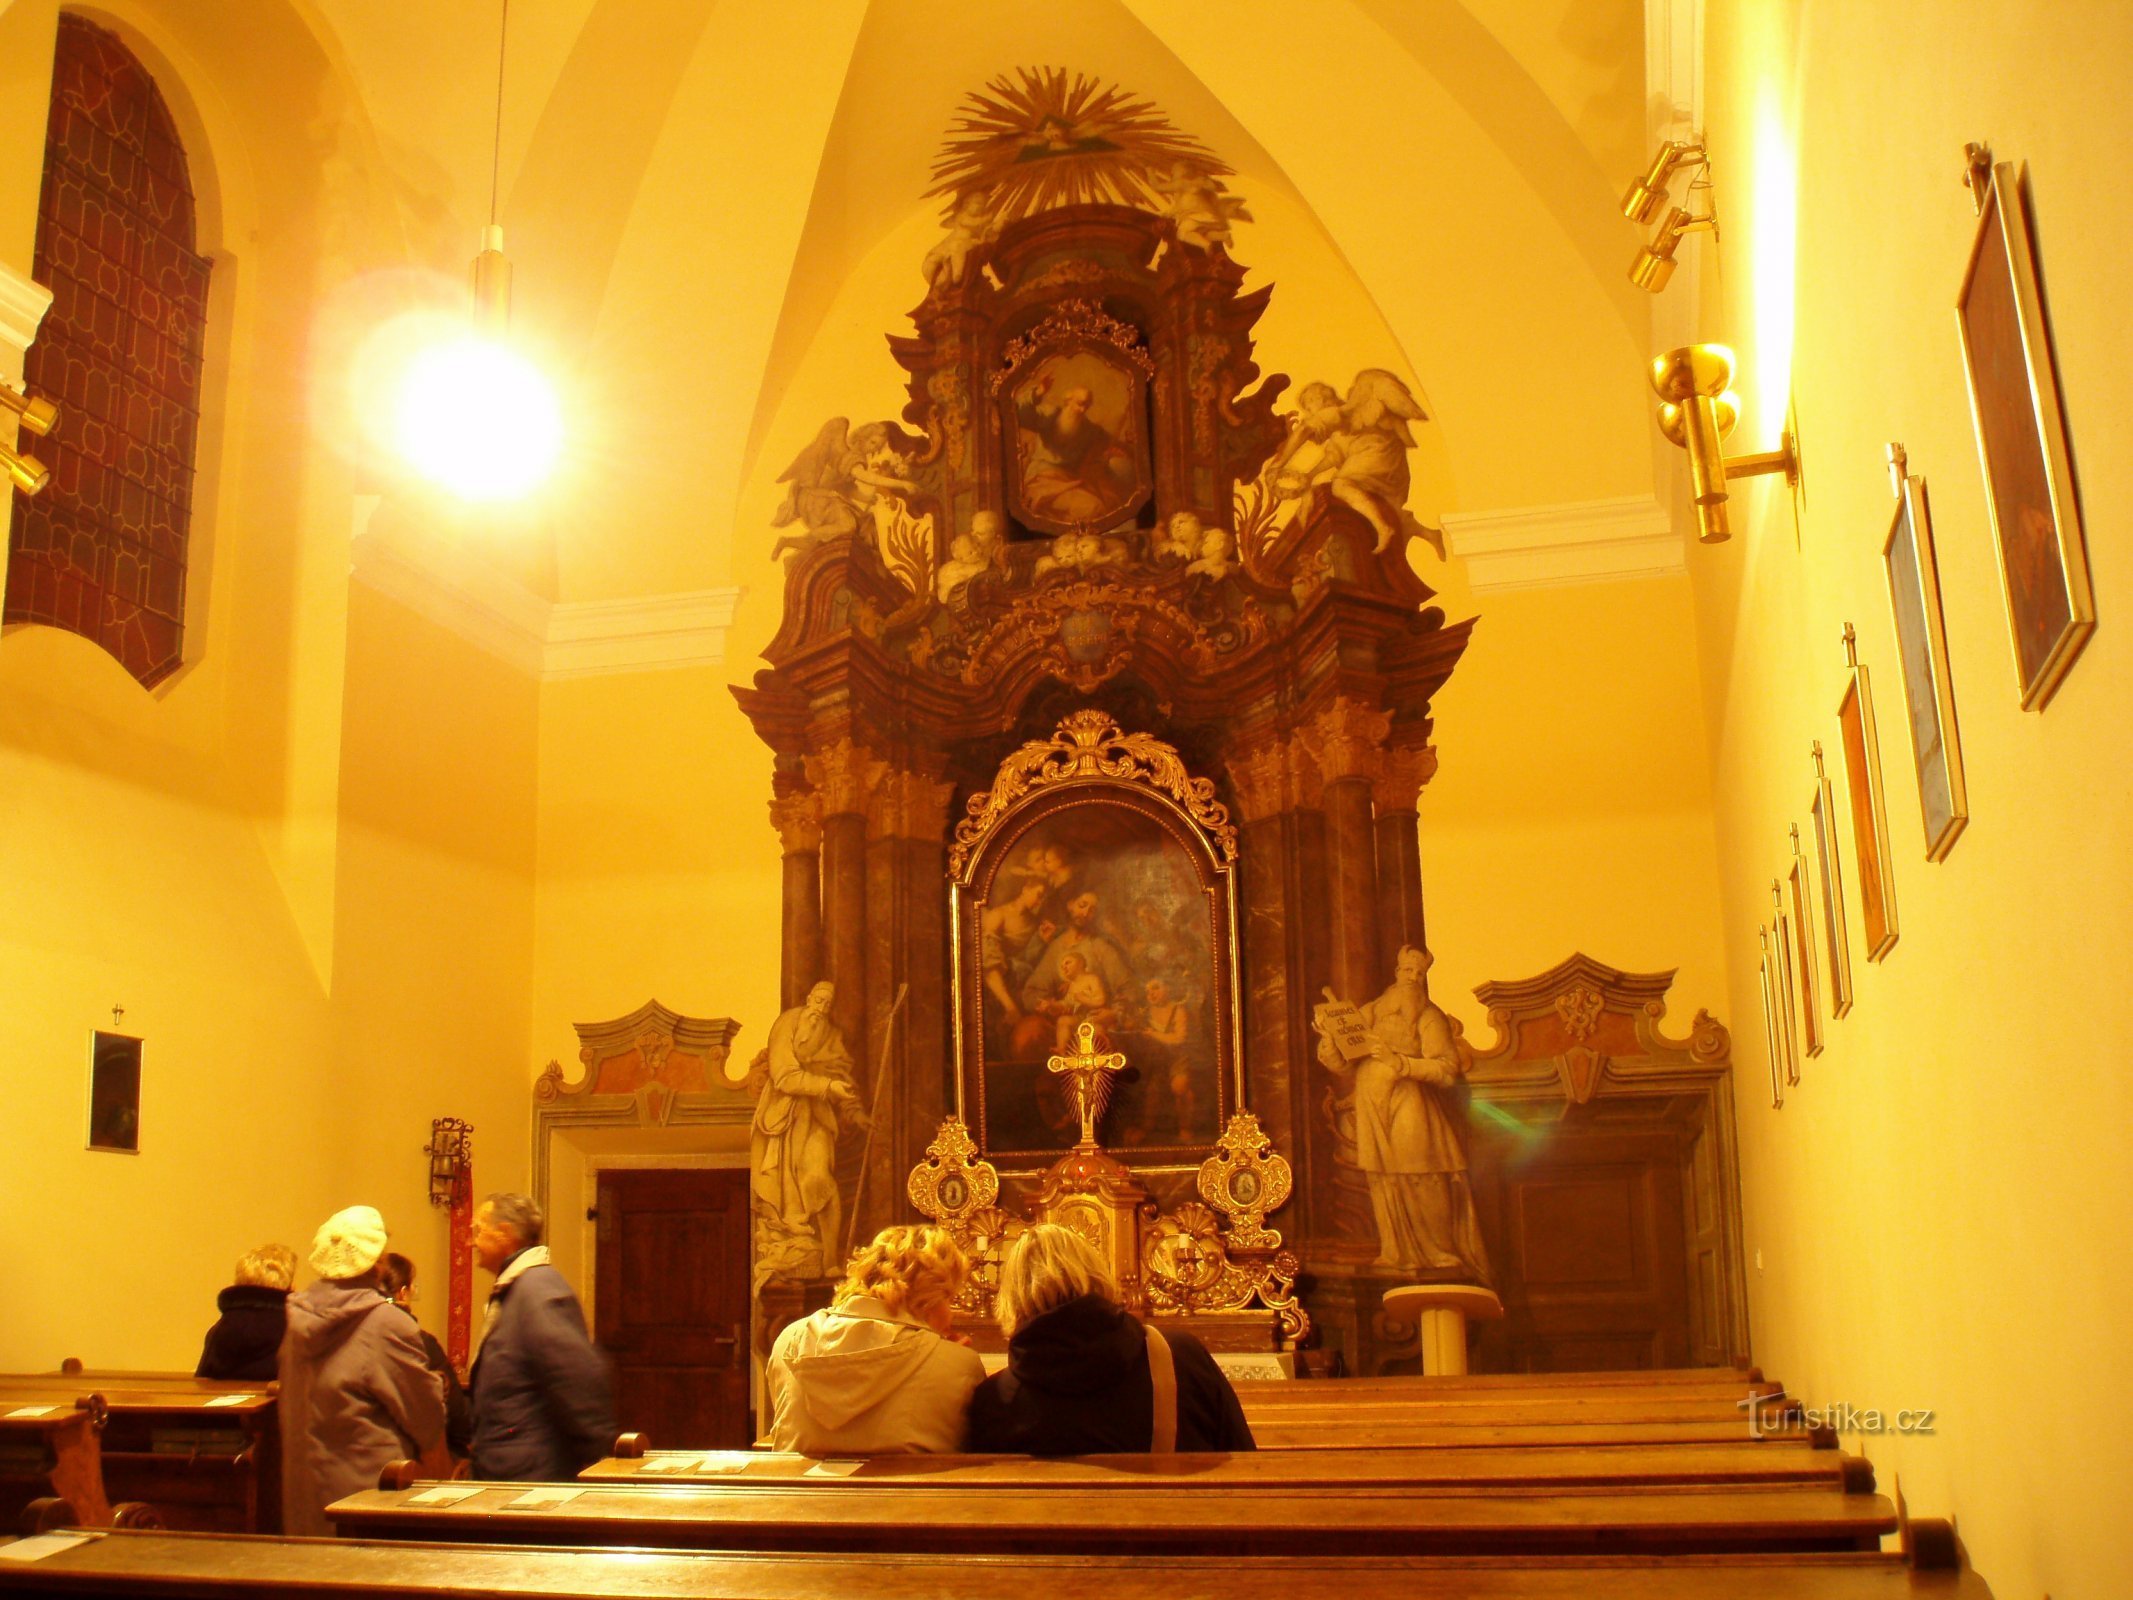 Notranjost kapele sv. Josefa (Hradec Králové, 19.3.2010)